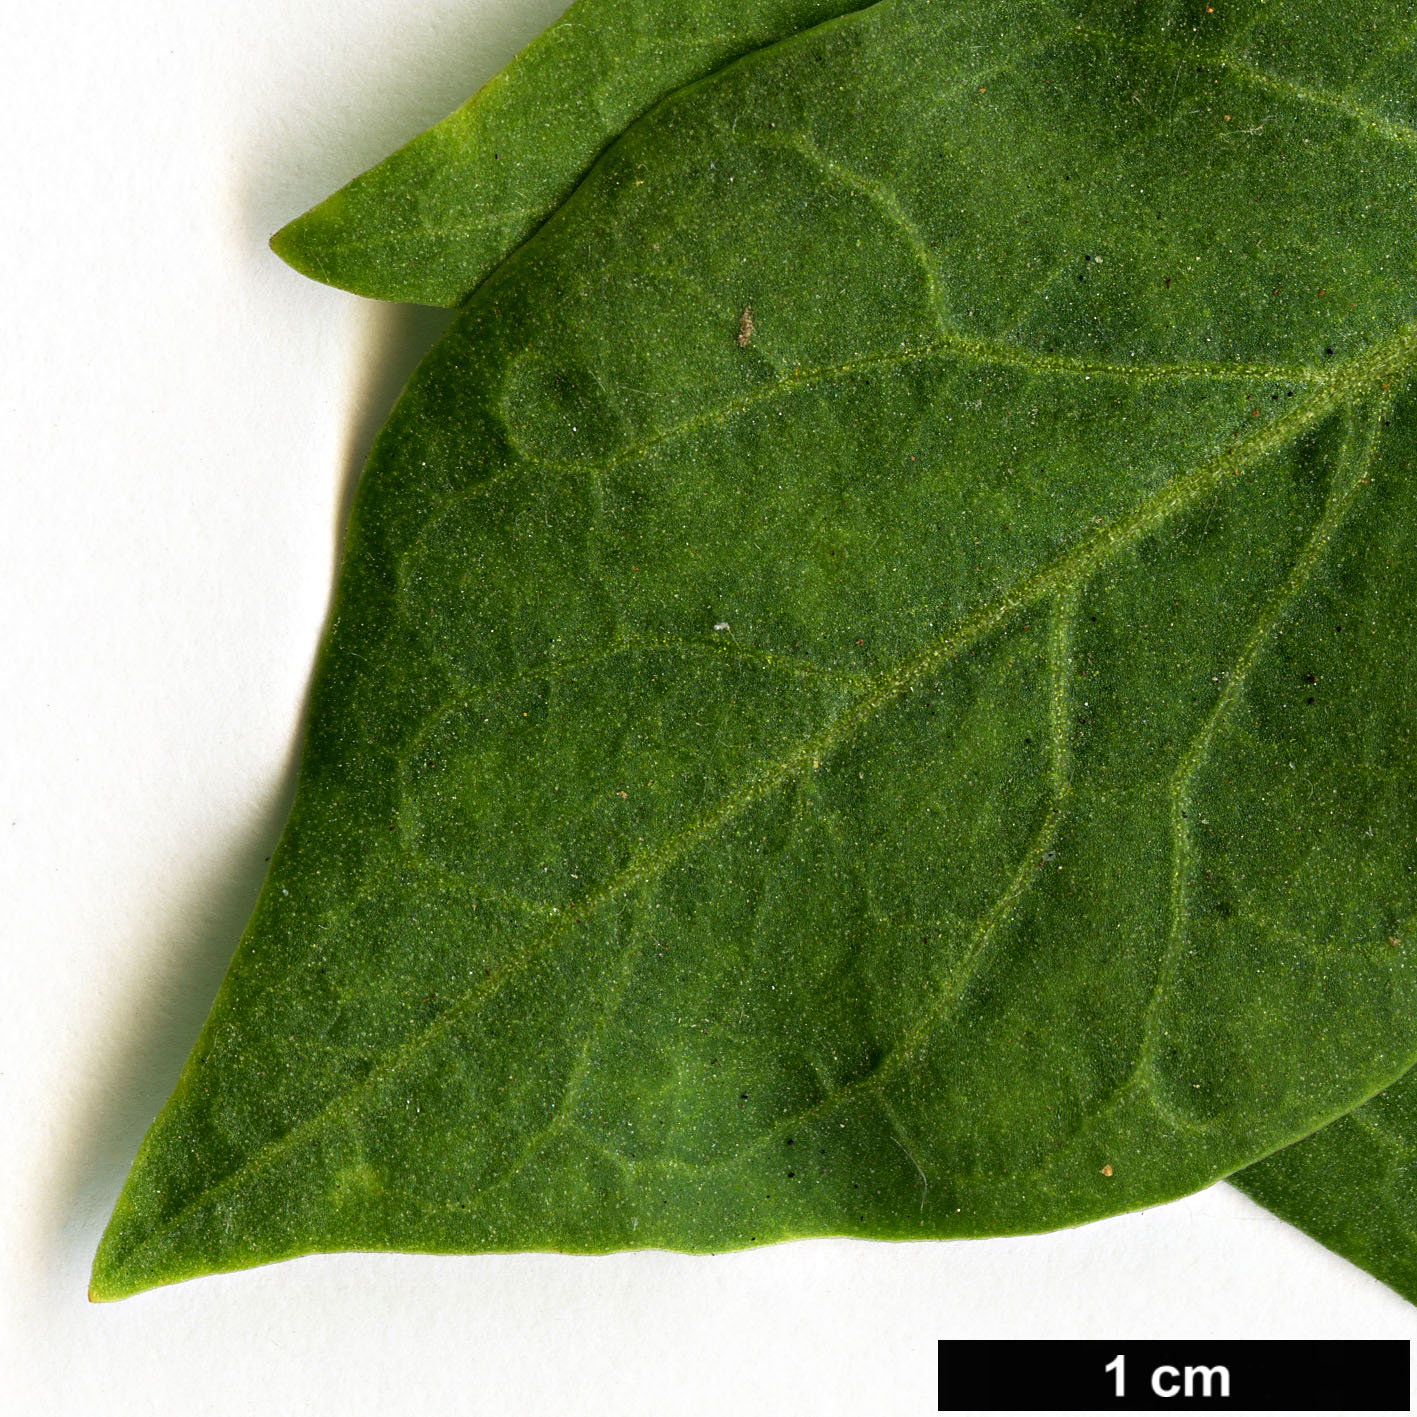 High resolution image: Family: Solanaceae - Genus: Lycium - Taxon: barbarum